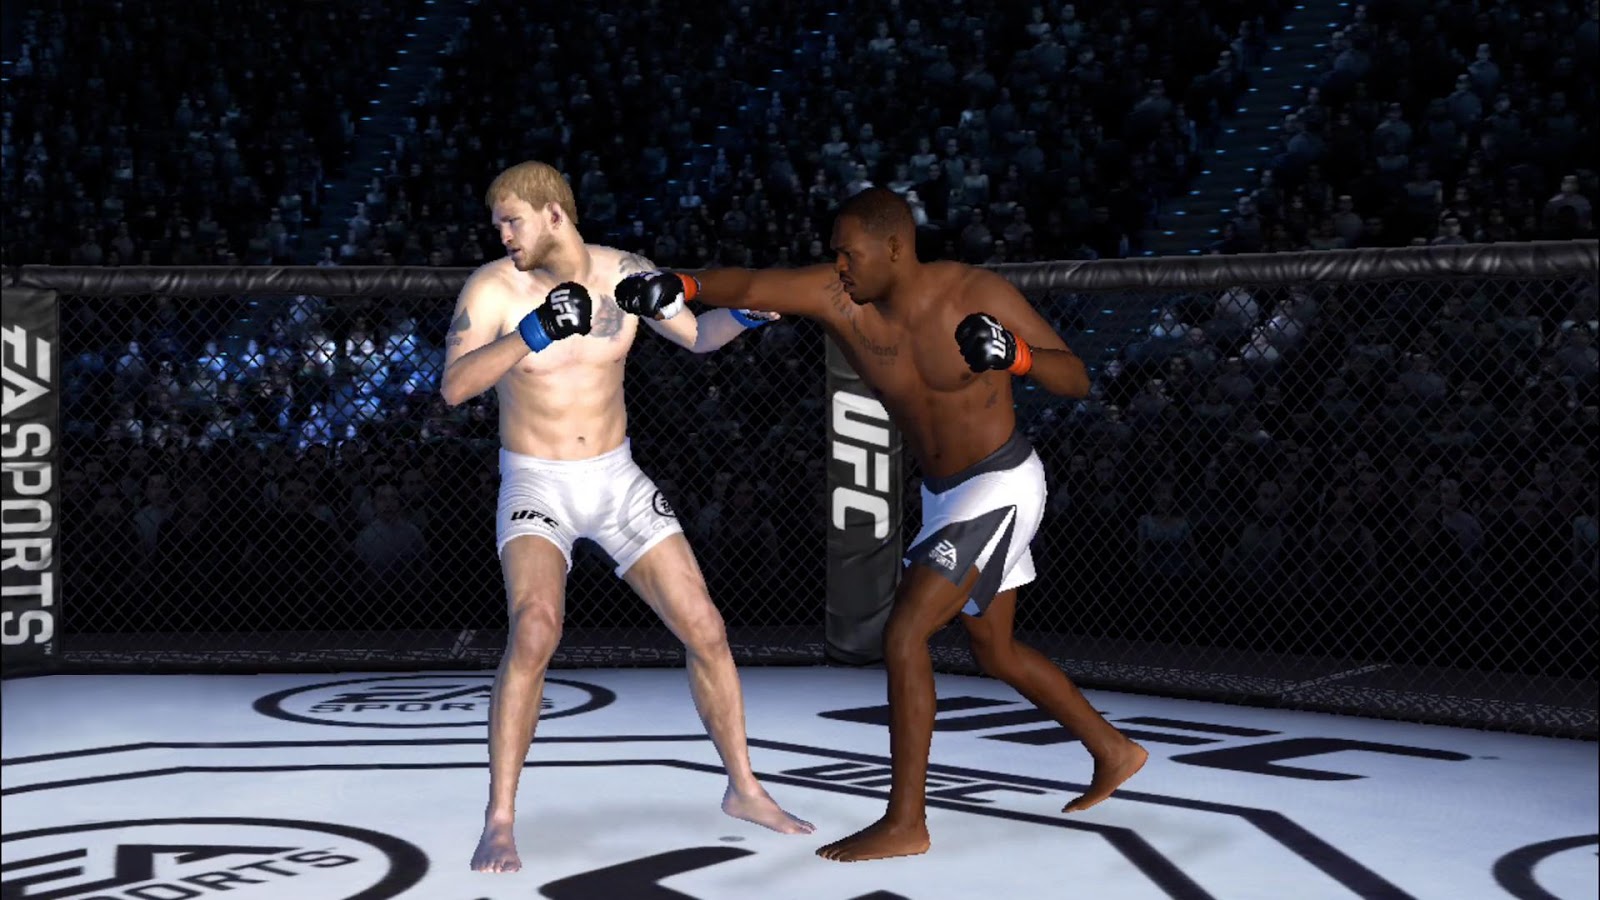 دانلود EA SPORTS UFC 1.9.3786573 – بازی مسابقات بوکس اندروید + دیتا